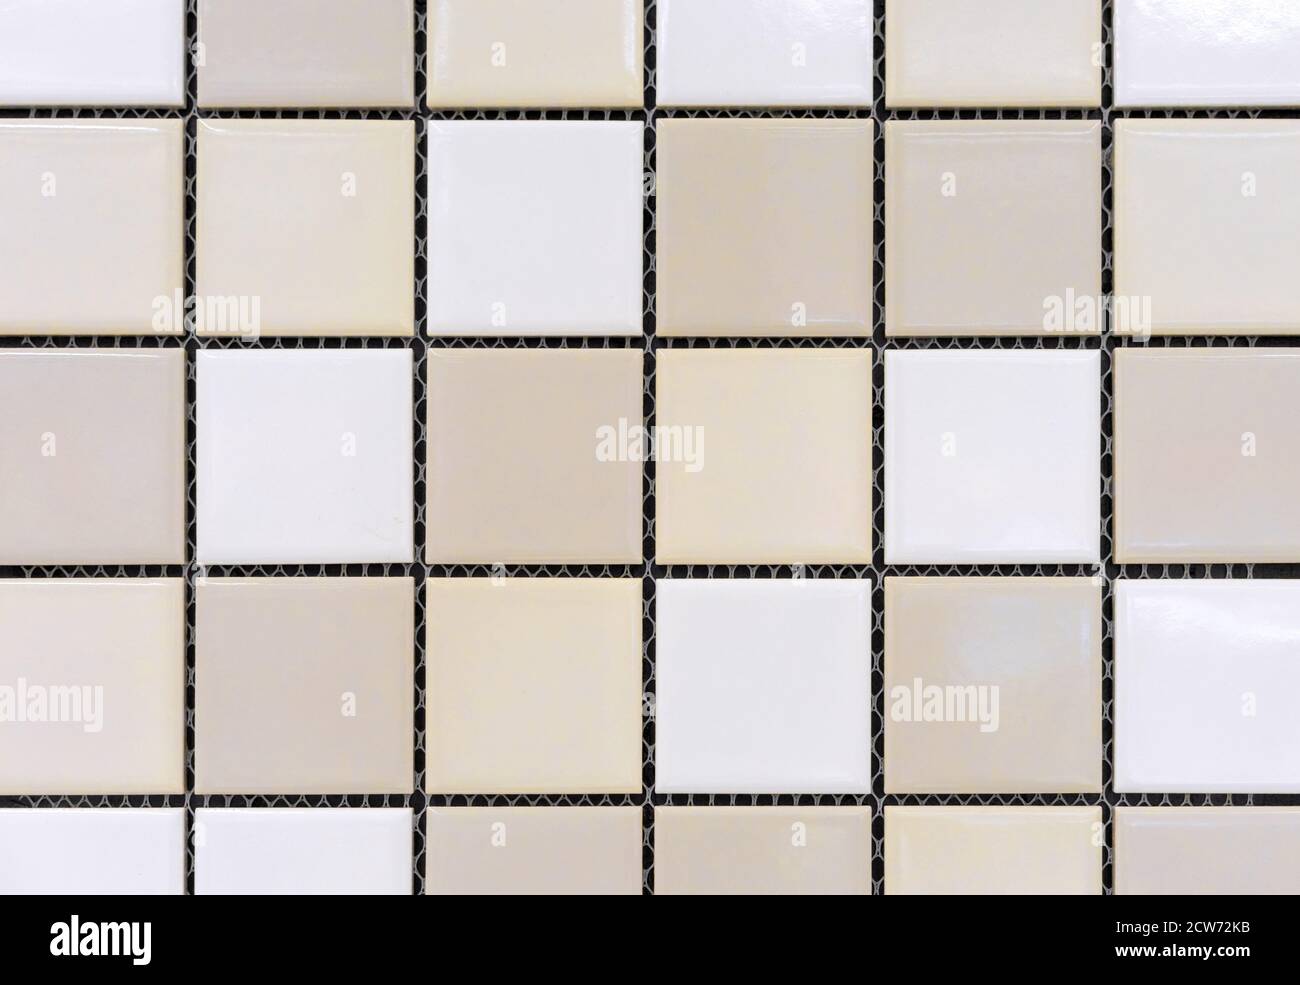 Carreaux de mosaïque en céramique avec des carrés jaunes, beiges et blancs. Banque D'Images